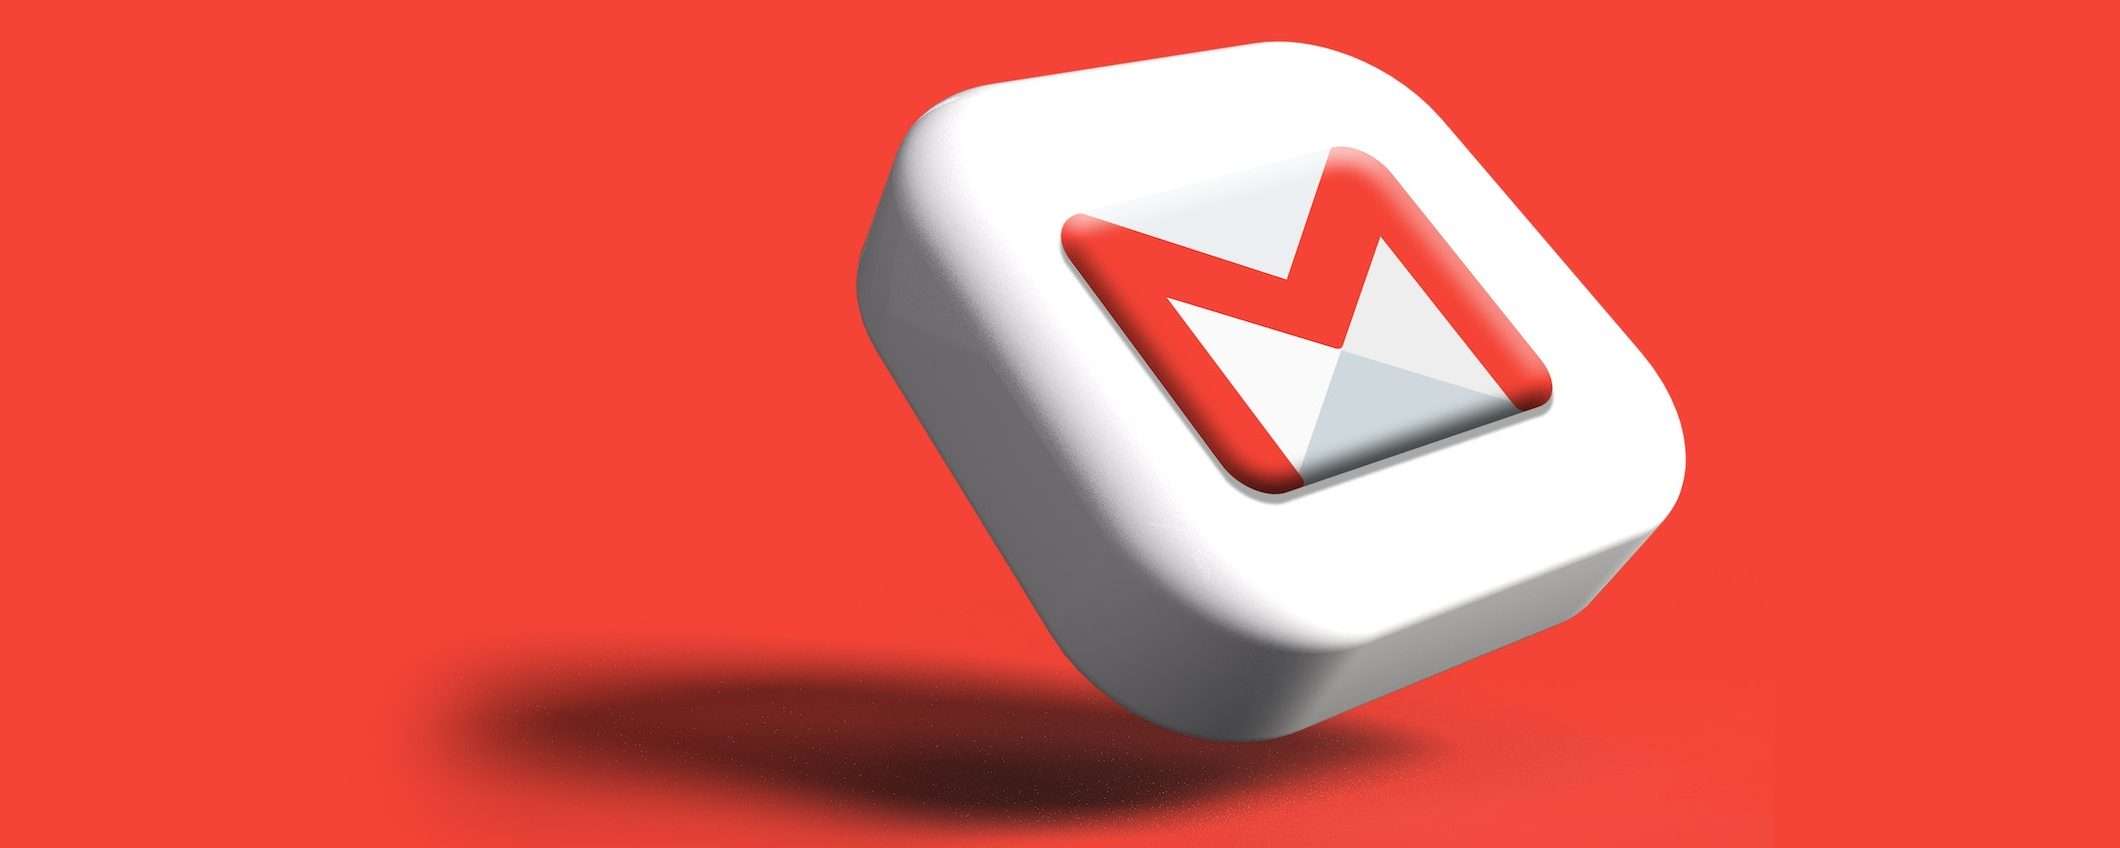 Gmail: pianificare le riunioni è più semplice